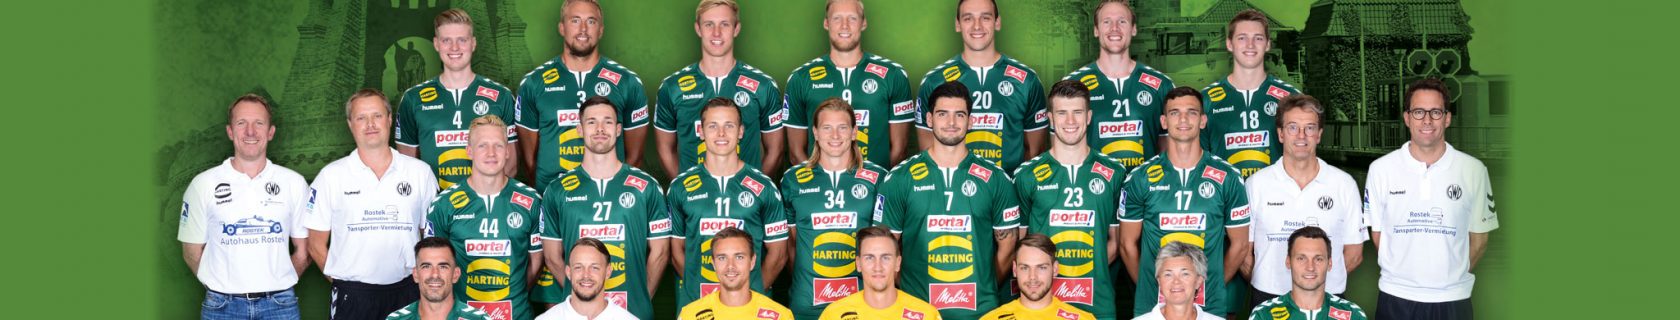 Weigert ist Sponsoring-Partner des Handball-Bundesligisten GWD Minden